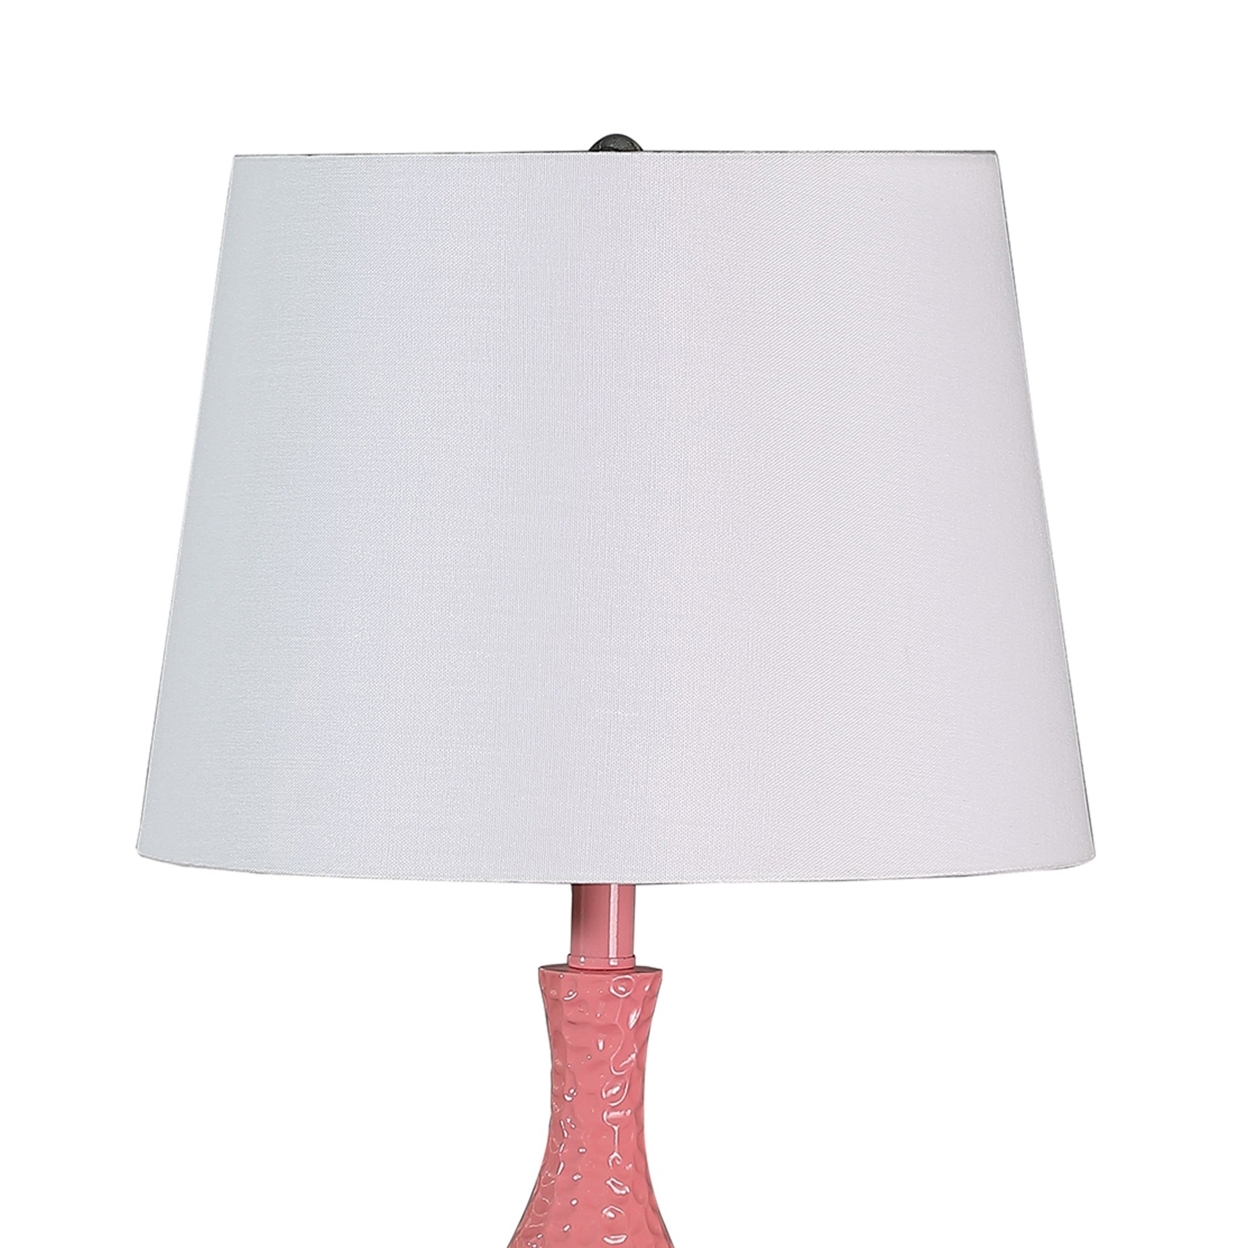 Pin Bowl Design Metal Table Lamp With Hammered Pattern, Pink- Saltoro Sherpi